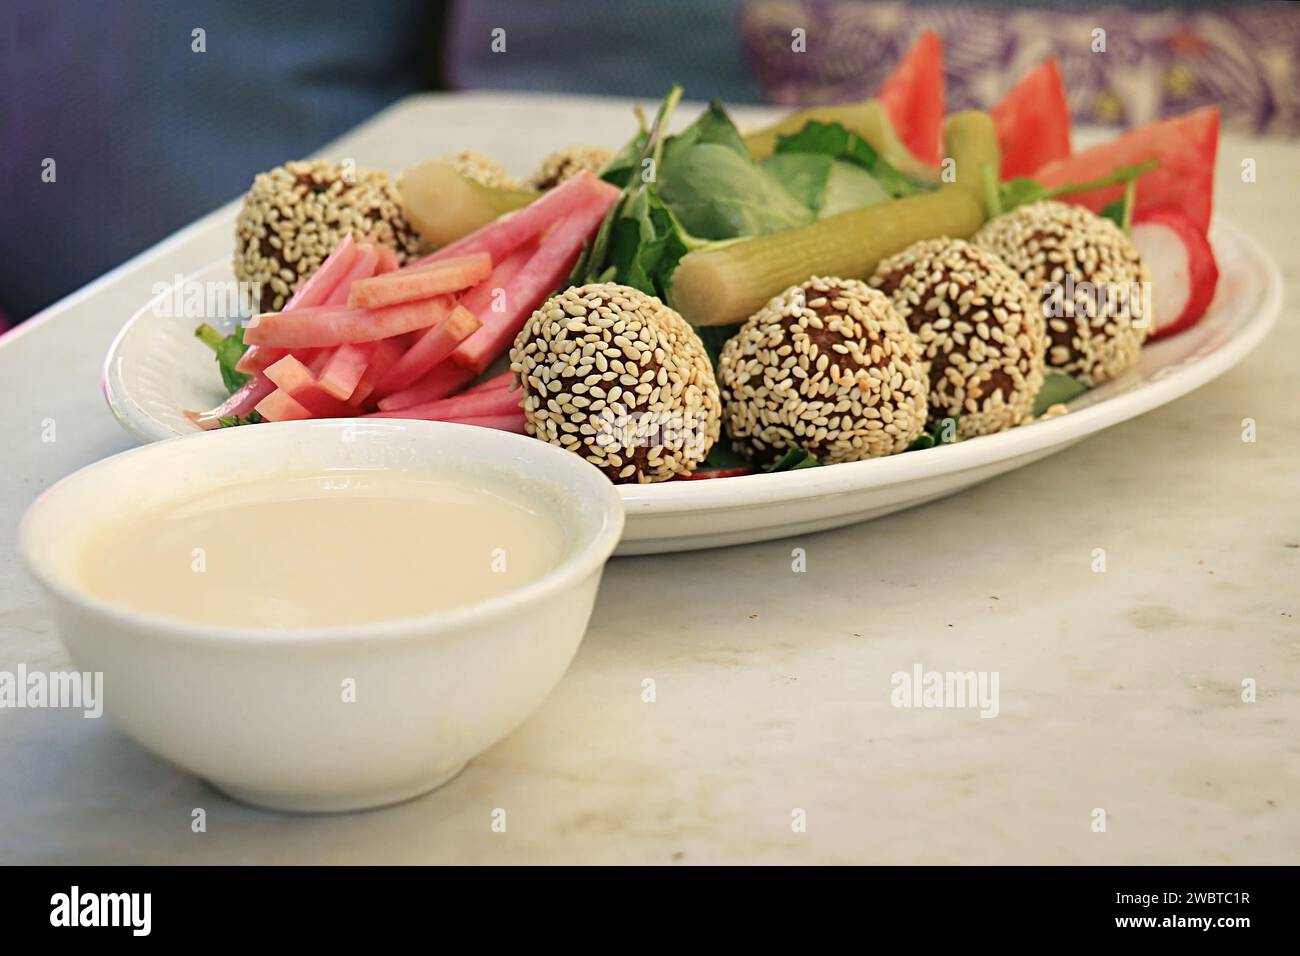 Palle di falafel ricoperte di sesamo in un piatto insieme alle verdure tradizionali e alla salsa tahini. Foto Stock